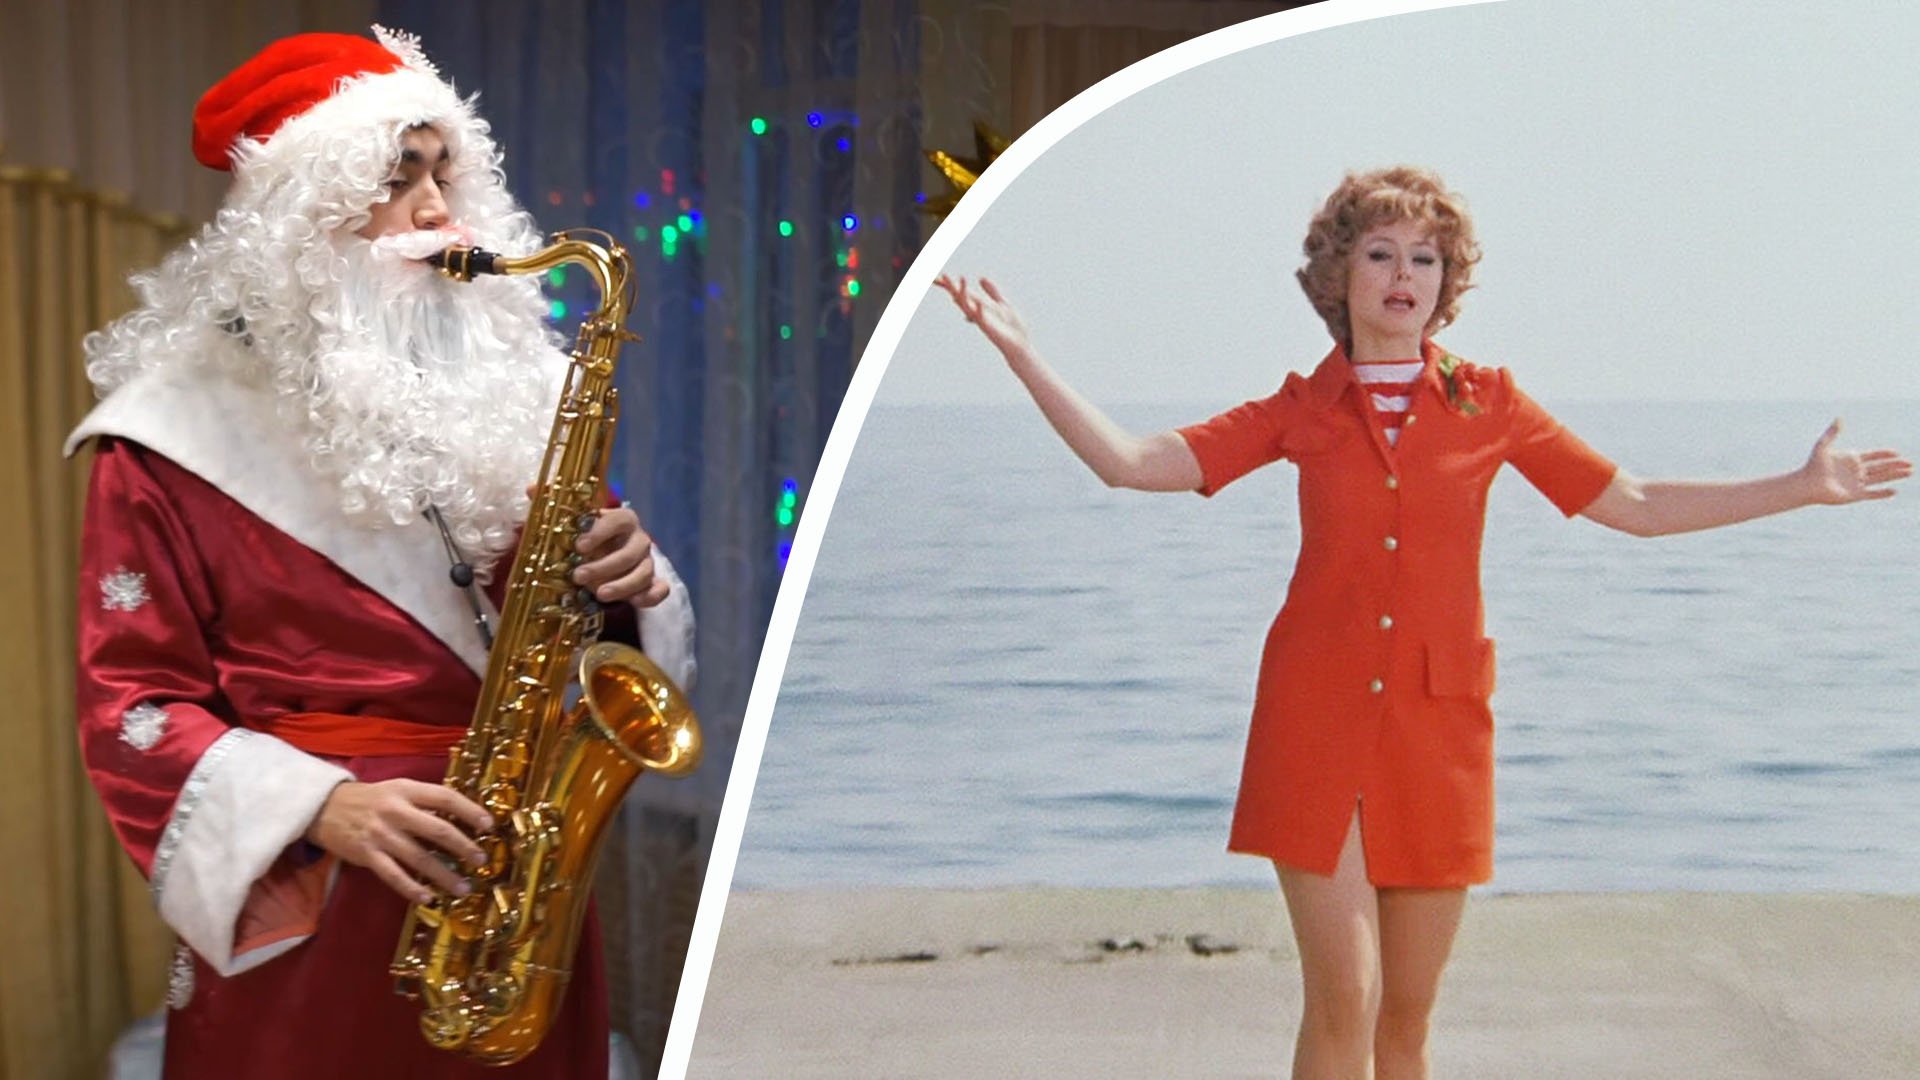 Дед Мороз играет "Звенит январская вьюга" на саксофоне #saxcover #saxofone #newyear #новыйгод